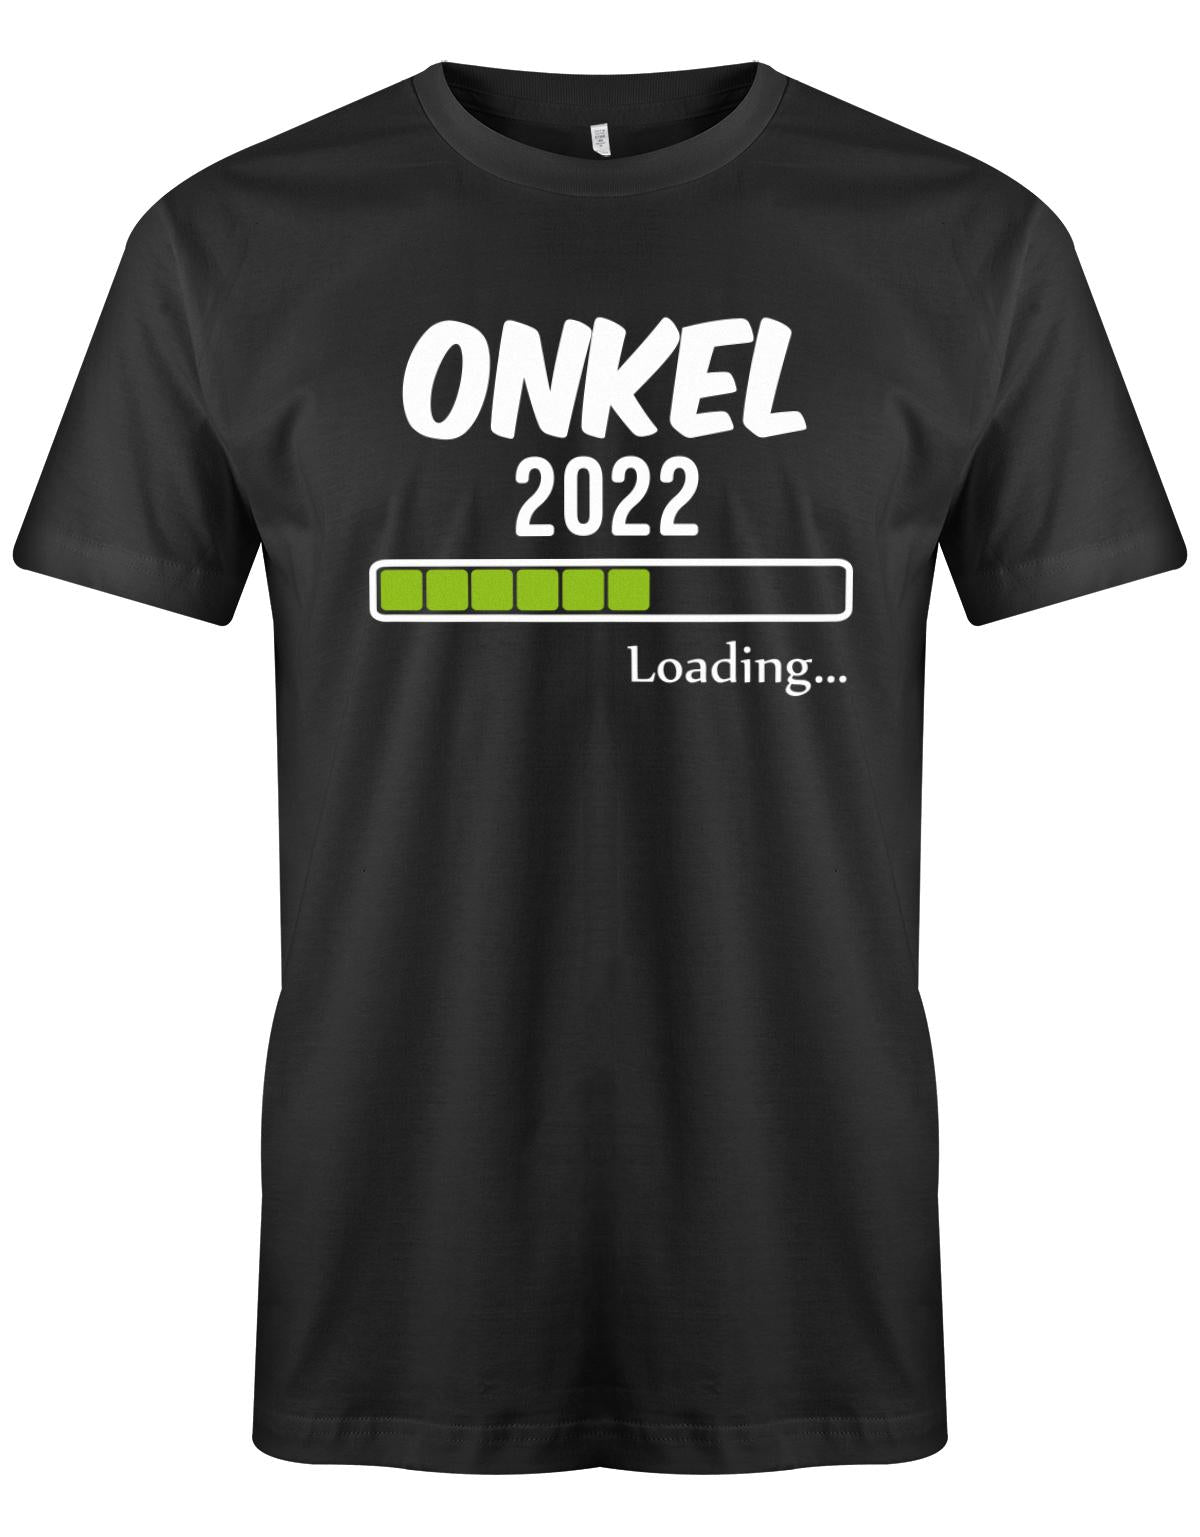 Onkel-loading-2022-Herren-Shirt-Schwarz